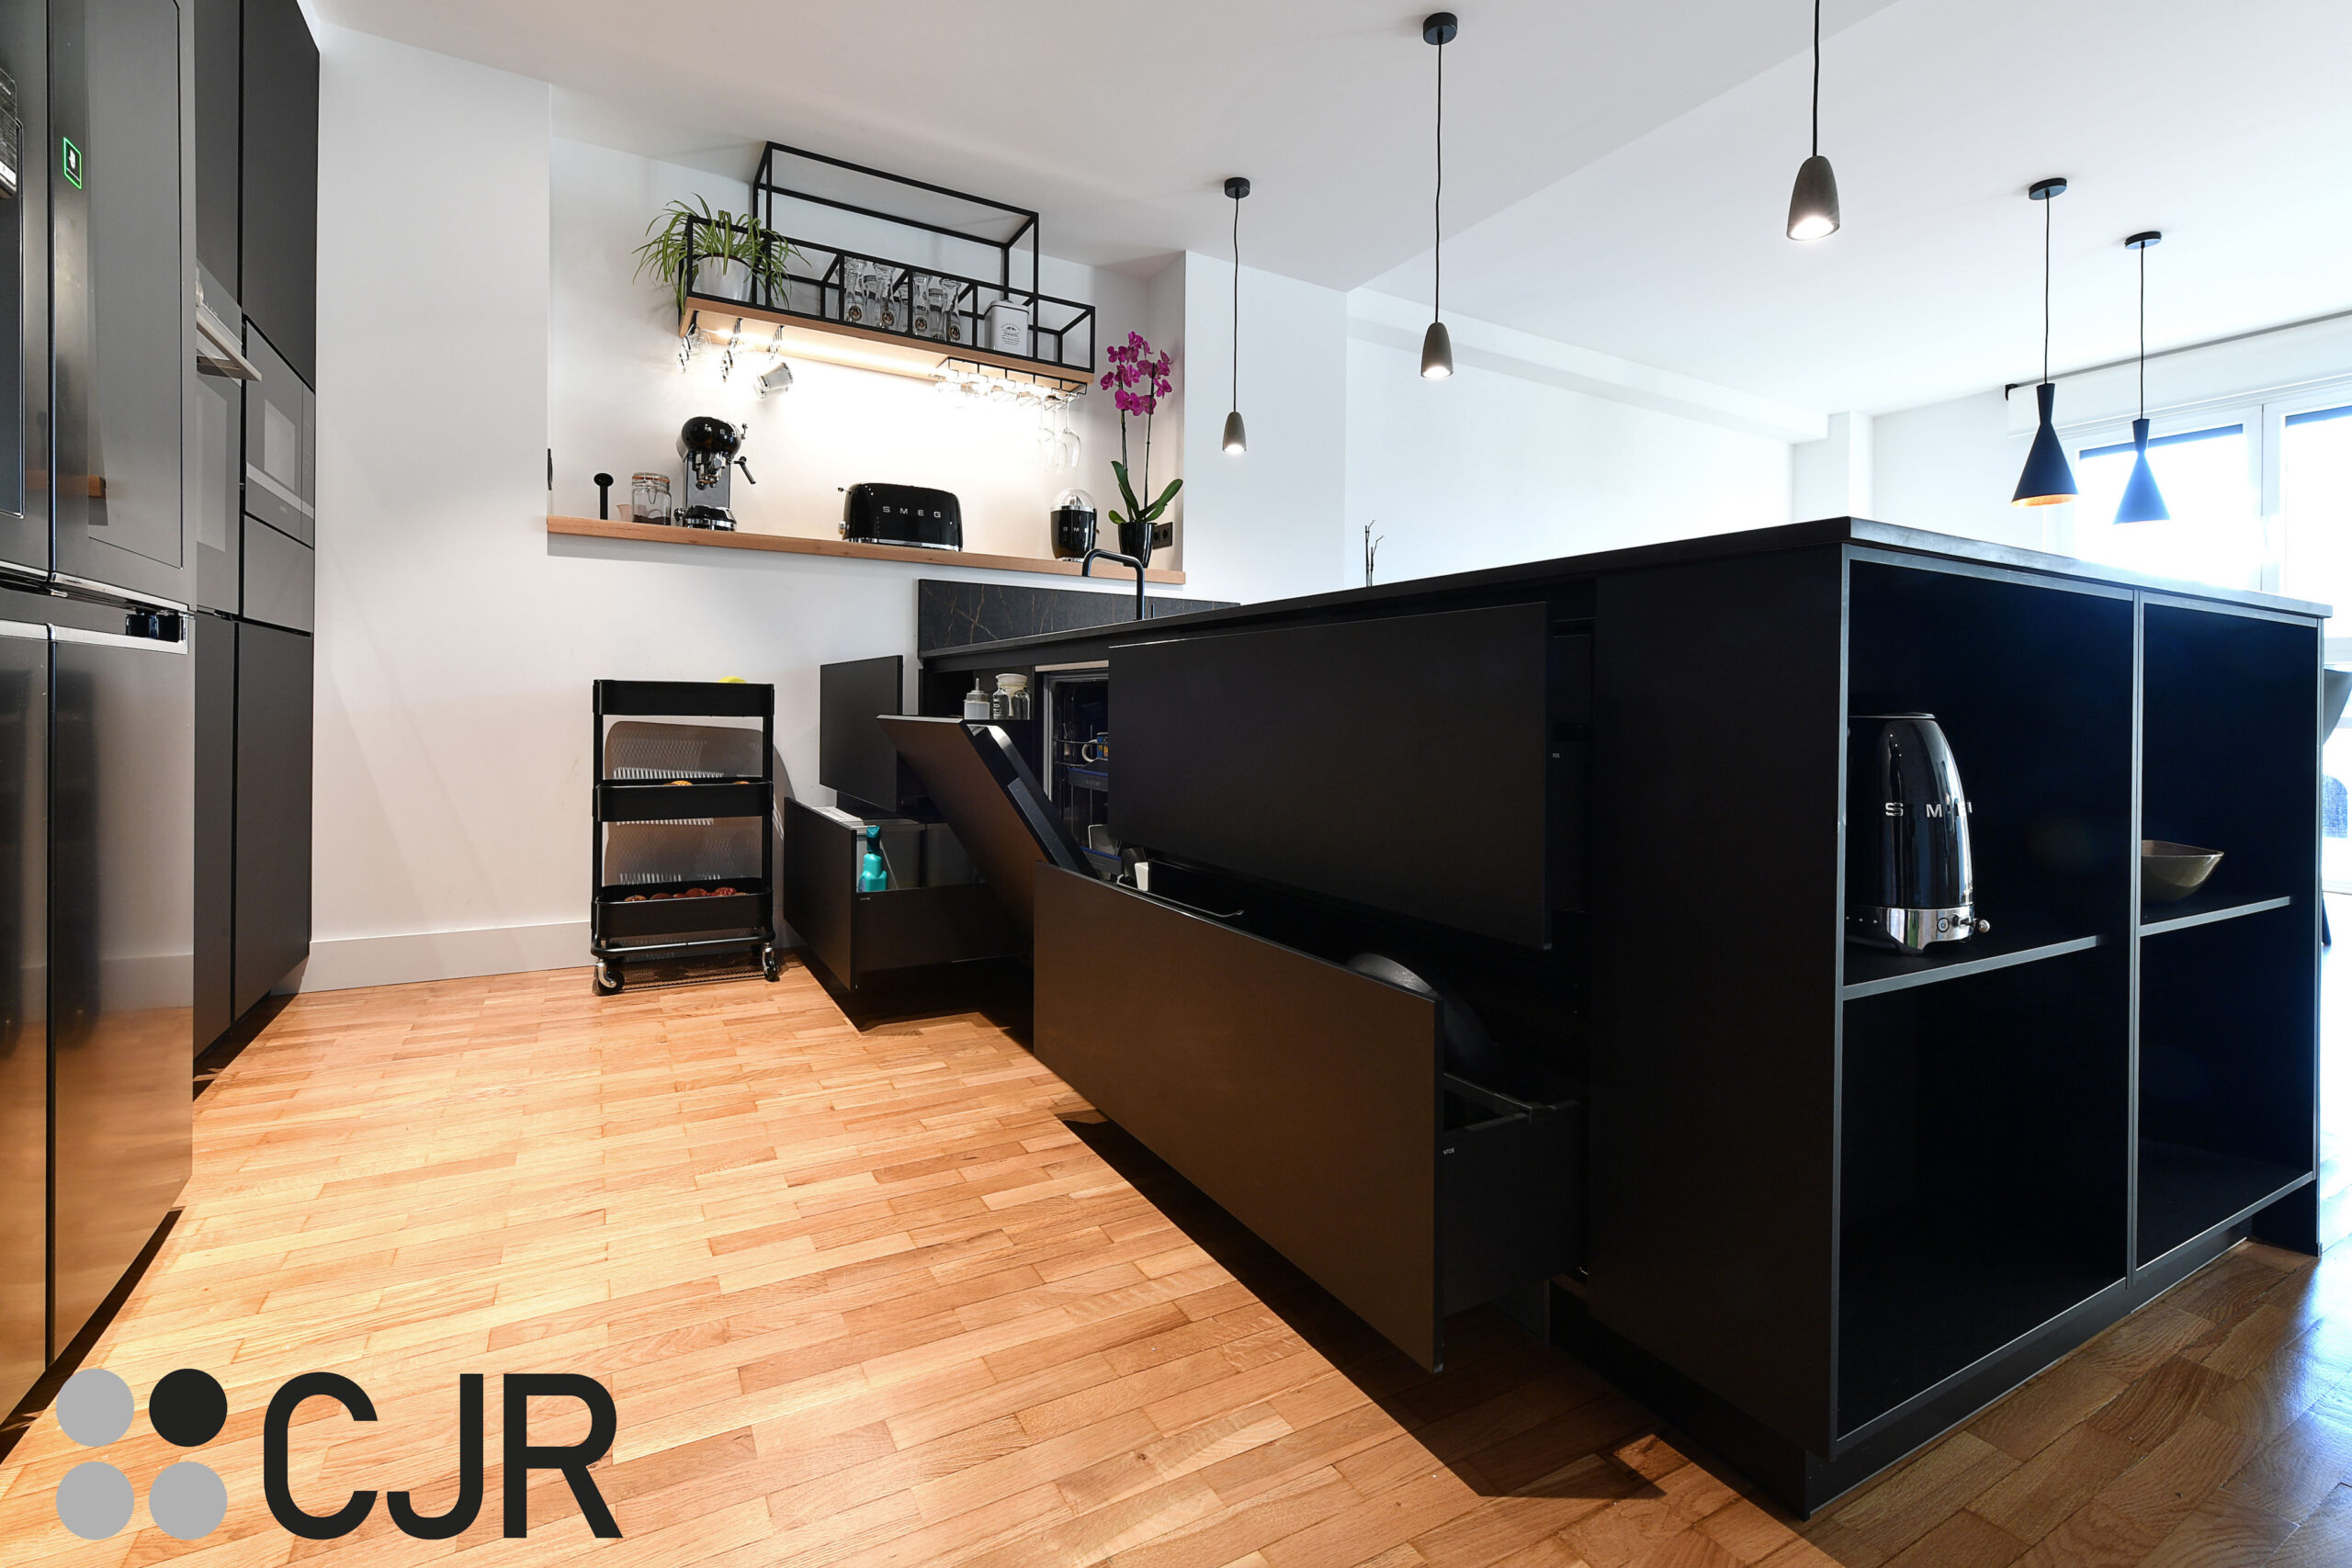 muebles bajos en negro de cocina moderna abierta cjr